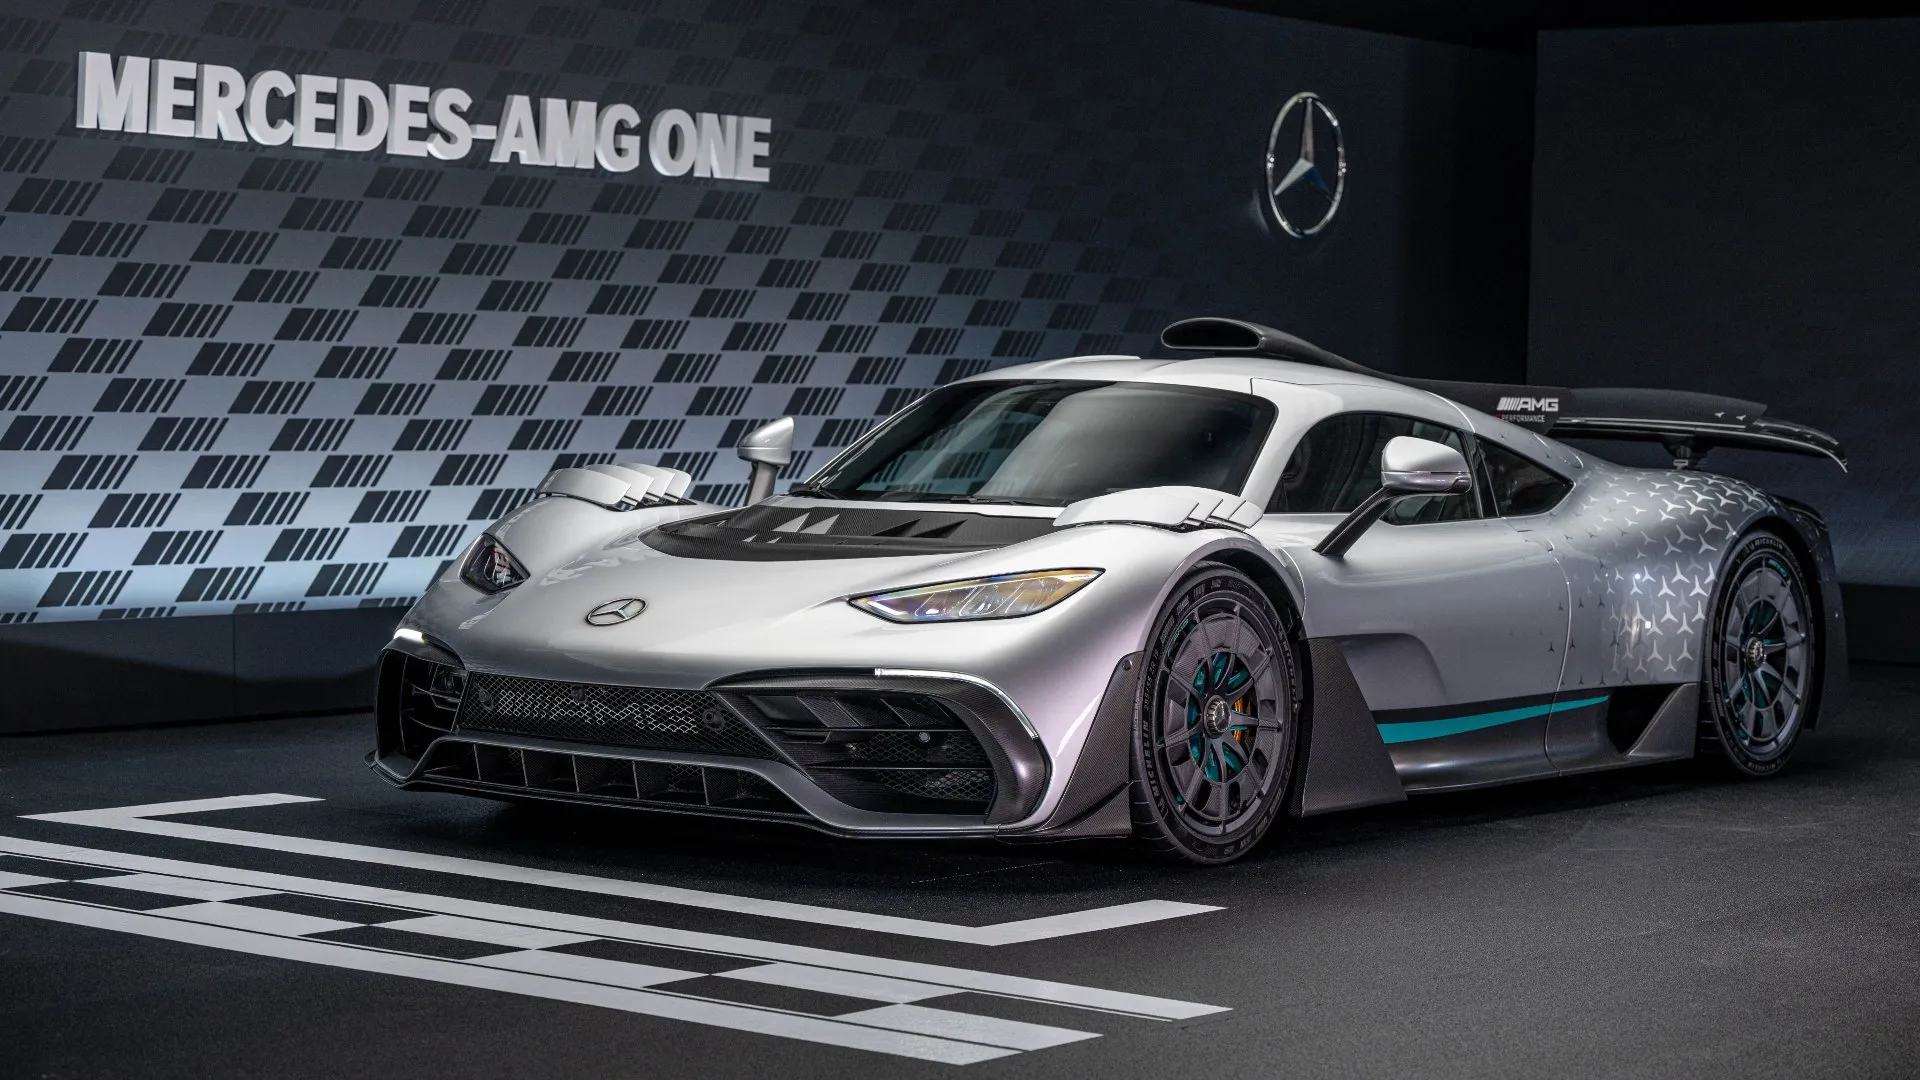 El Mercedes-AMG One no parece cumplir con sus promesas